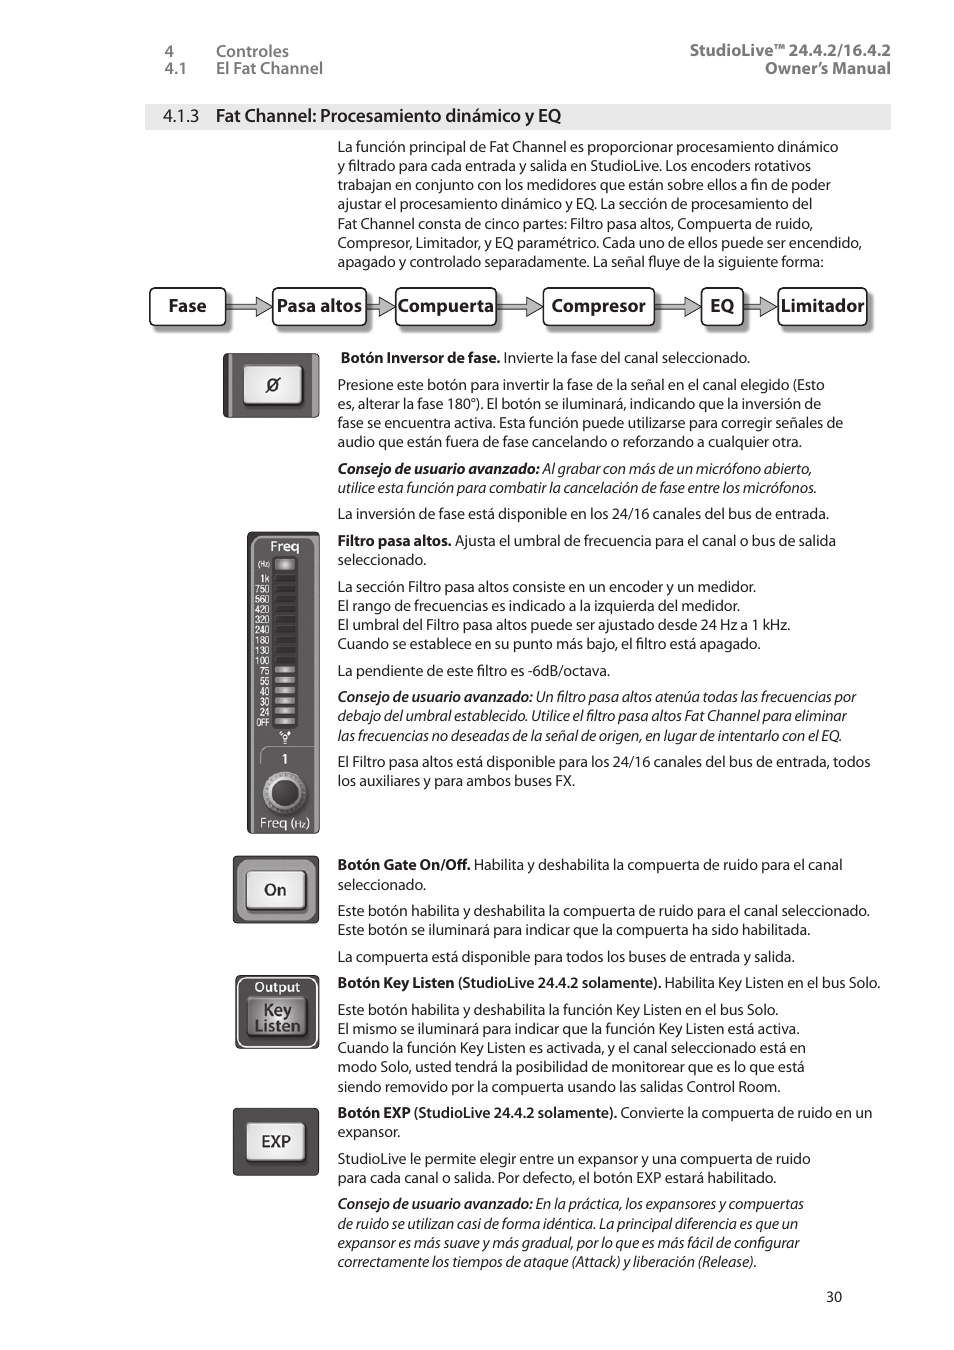 3 fat channel: procesamiento dinámico y eq, 3 fat channel: procesamiento, Dinámico y eq — 30 | PreSonus StudioLive 24.4.2 Manual del usuario | Página 34 / 114